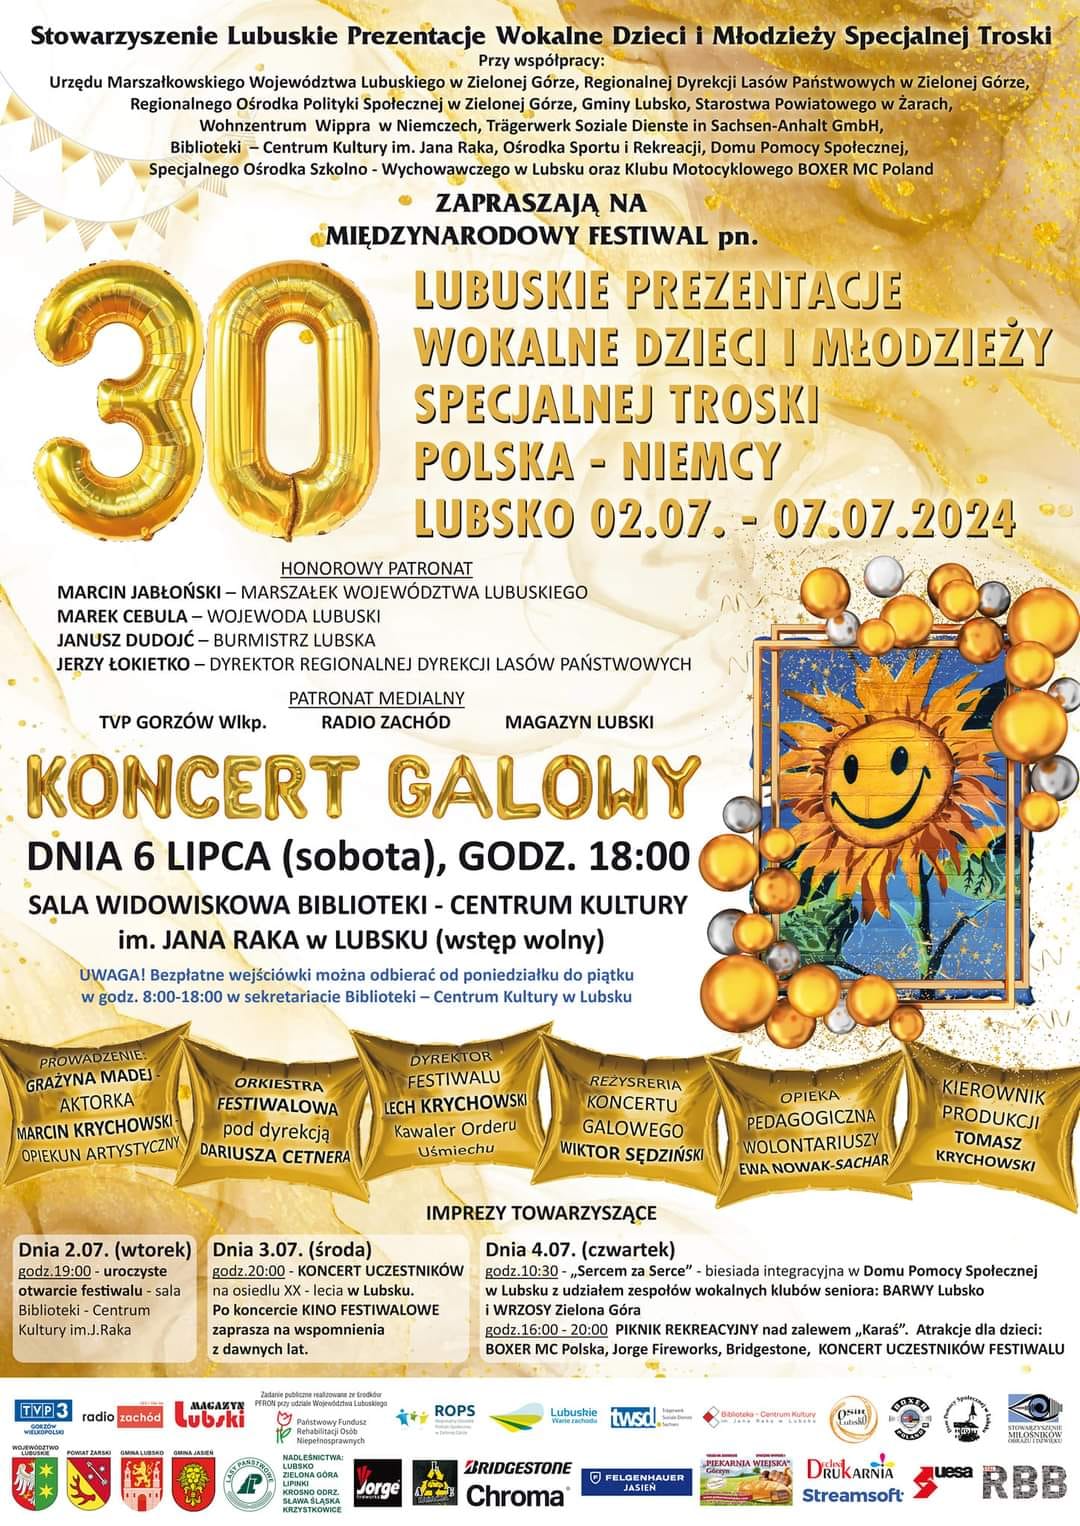 Festiwal w Lubsku obchodzi jubileusz 30-lecia! Radio Zachód - Lubuskie